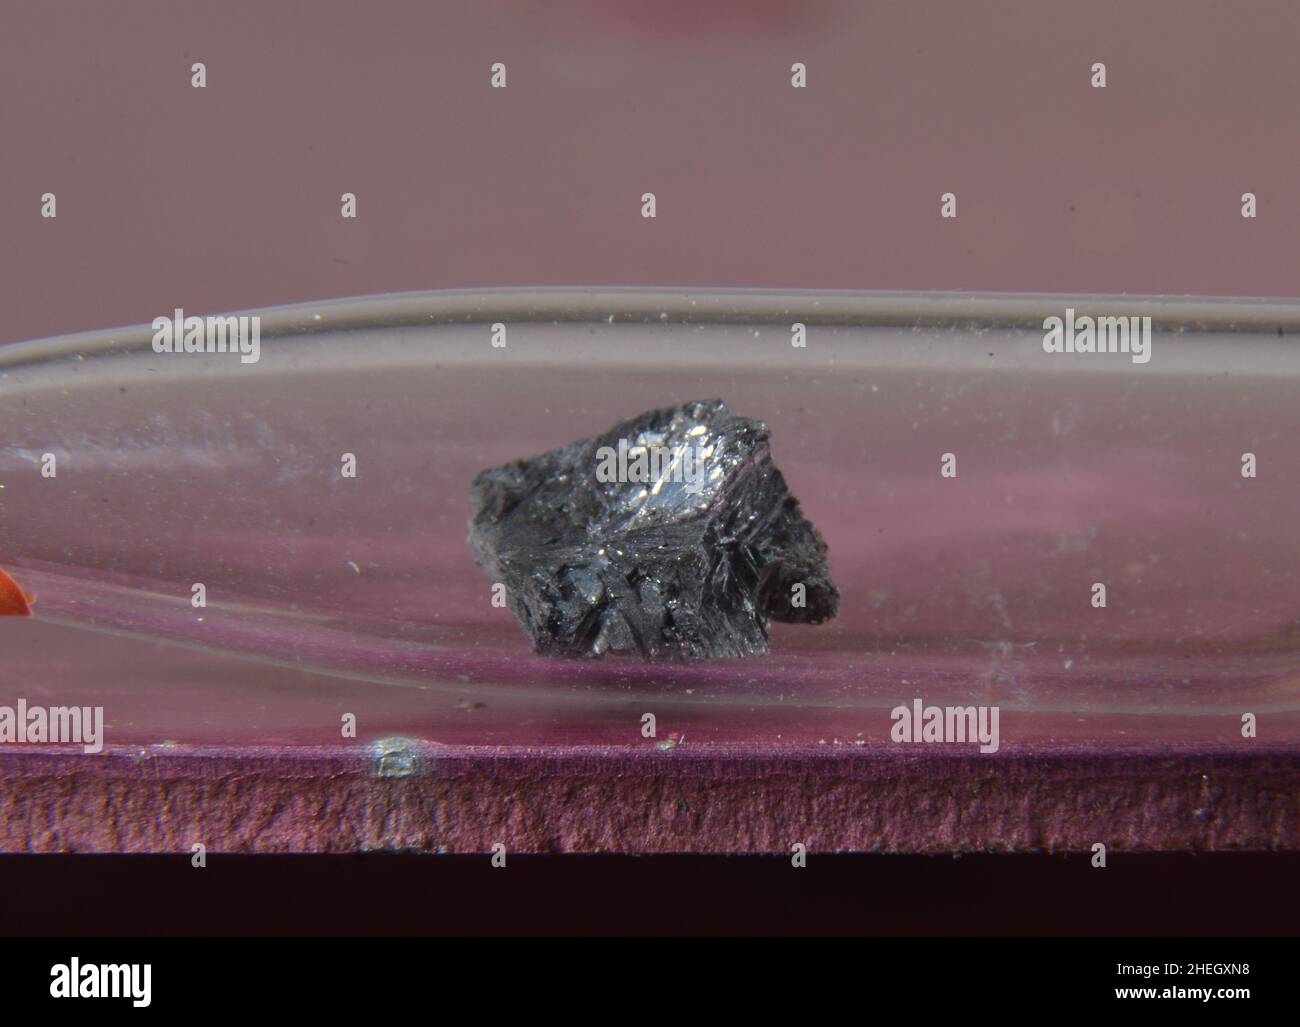 Microfoto di un campione dell'elemento periodico n° 33: Arsenico. Il metallo tossico viene conservato in una fiala di vetro Foto Stock